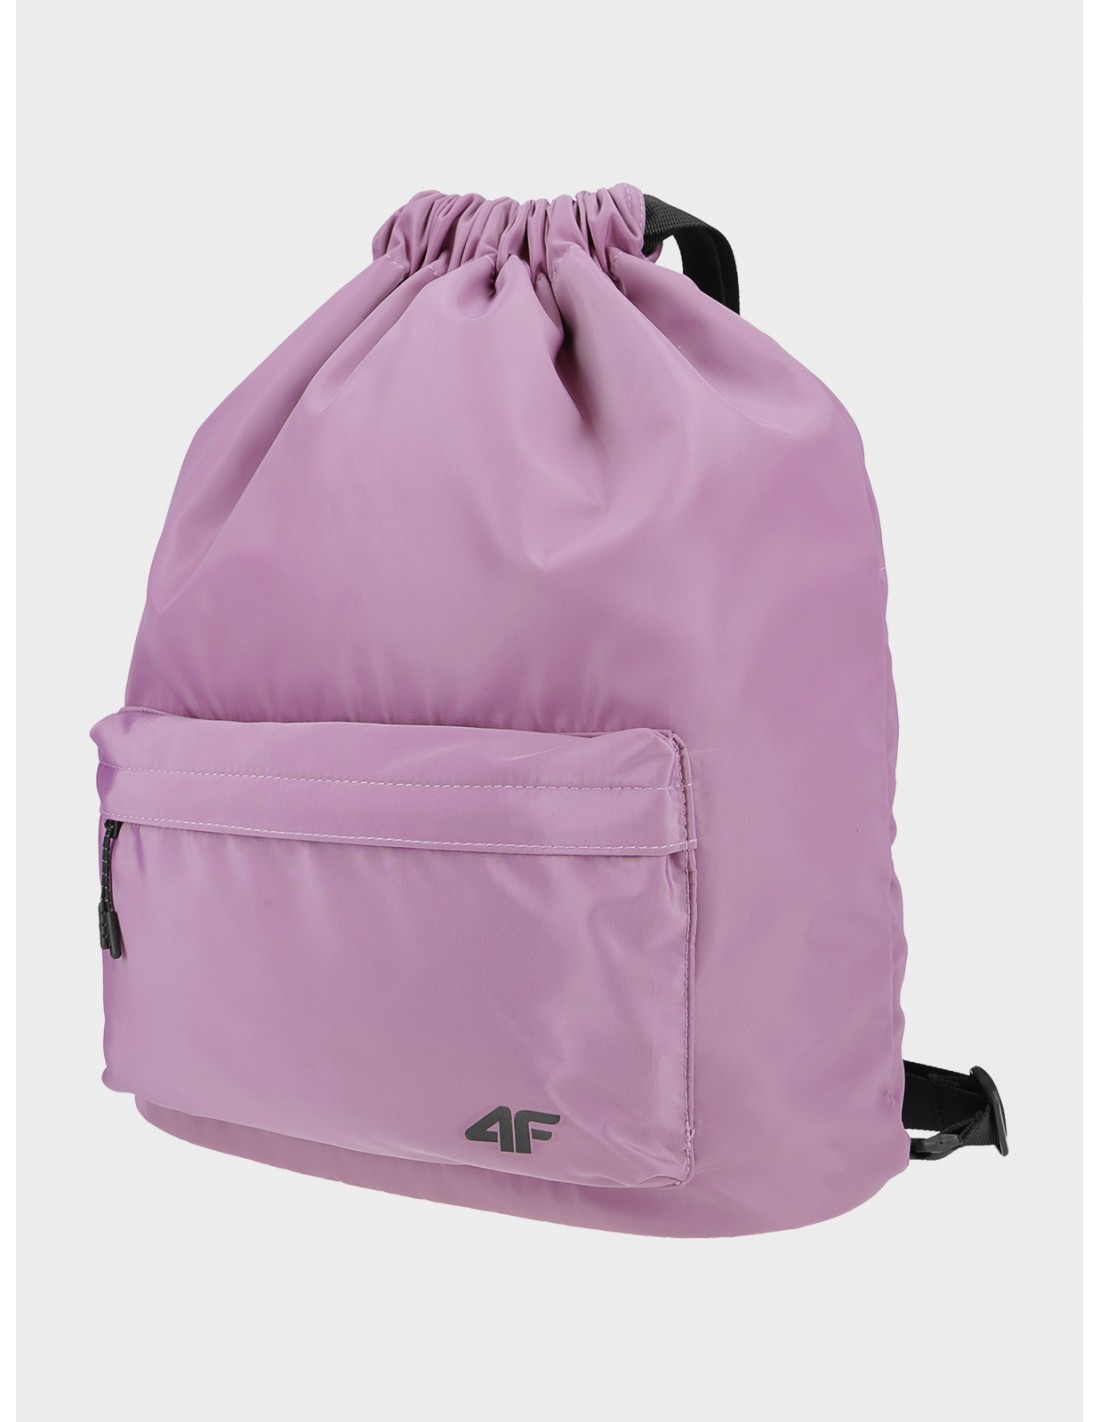 4F Rucksack Sportstyle, Light Pink Allover Rucksackart - Daypacks, Rucksackfarbe - Pink, von 4F